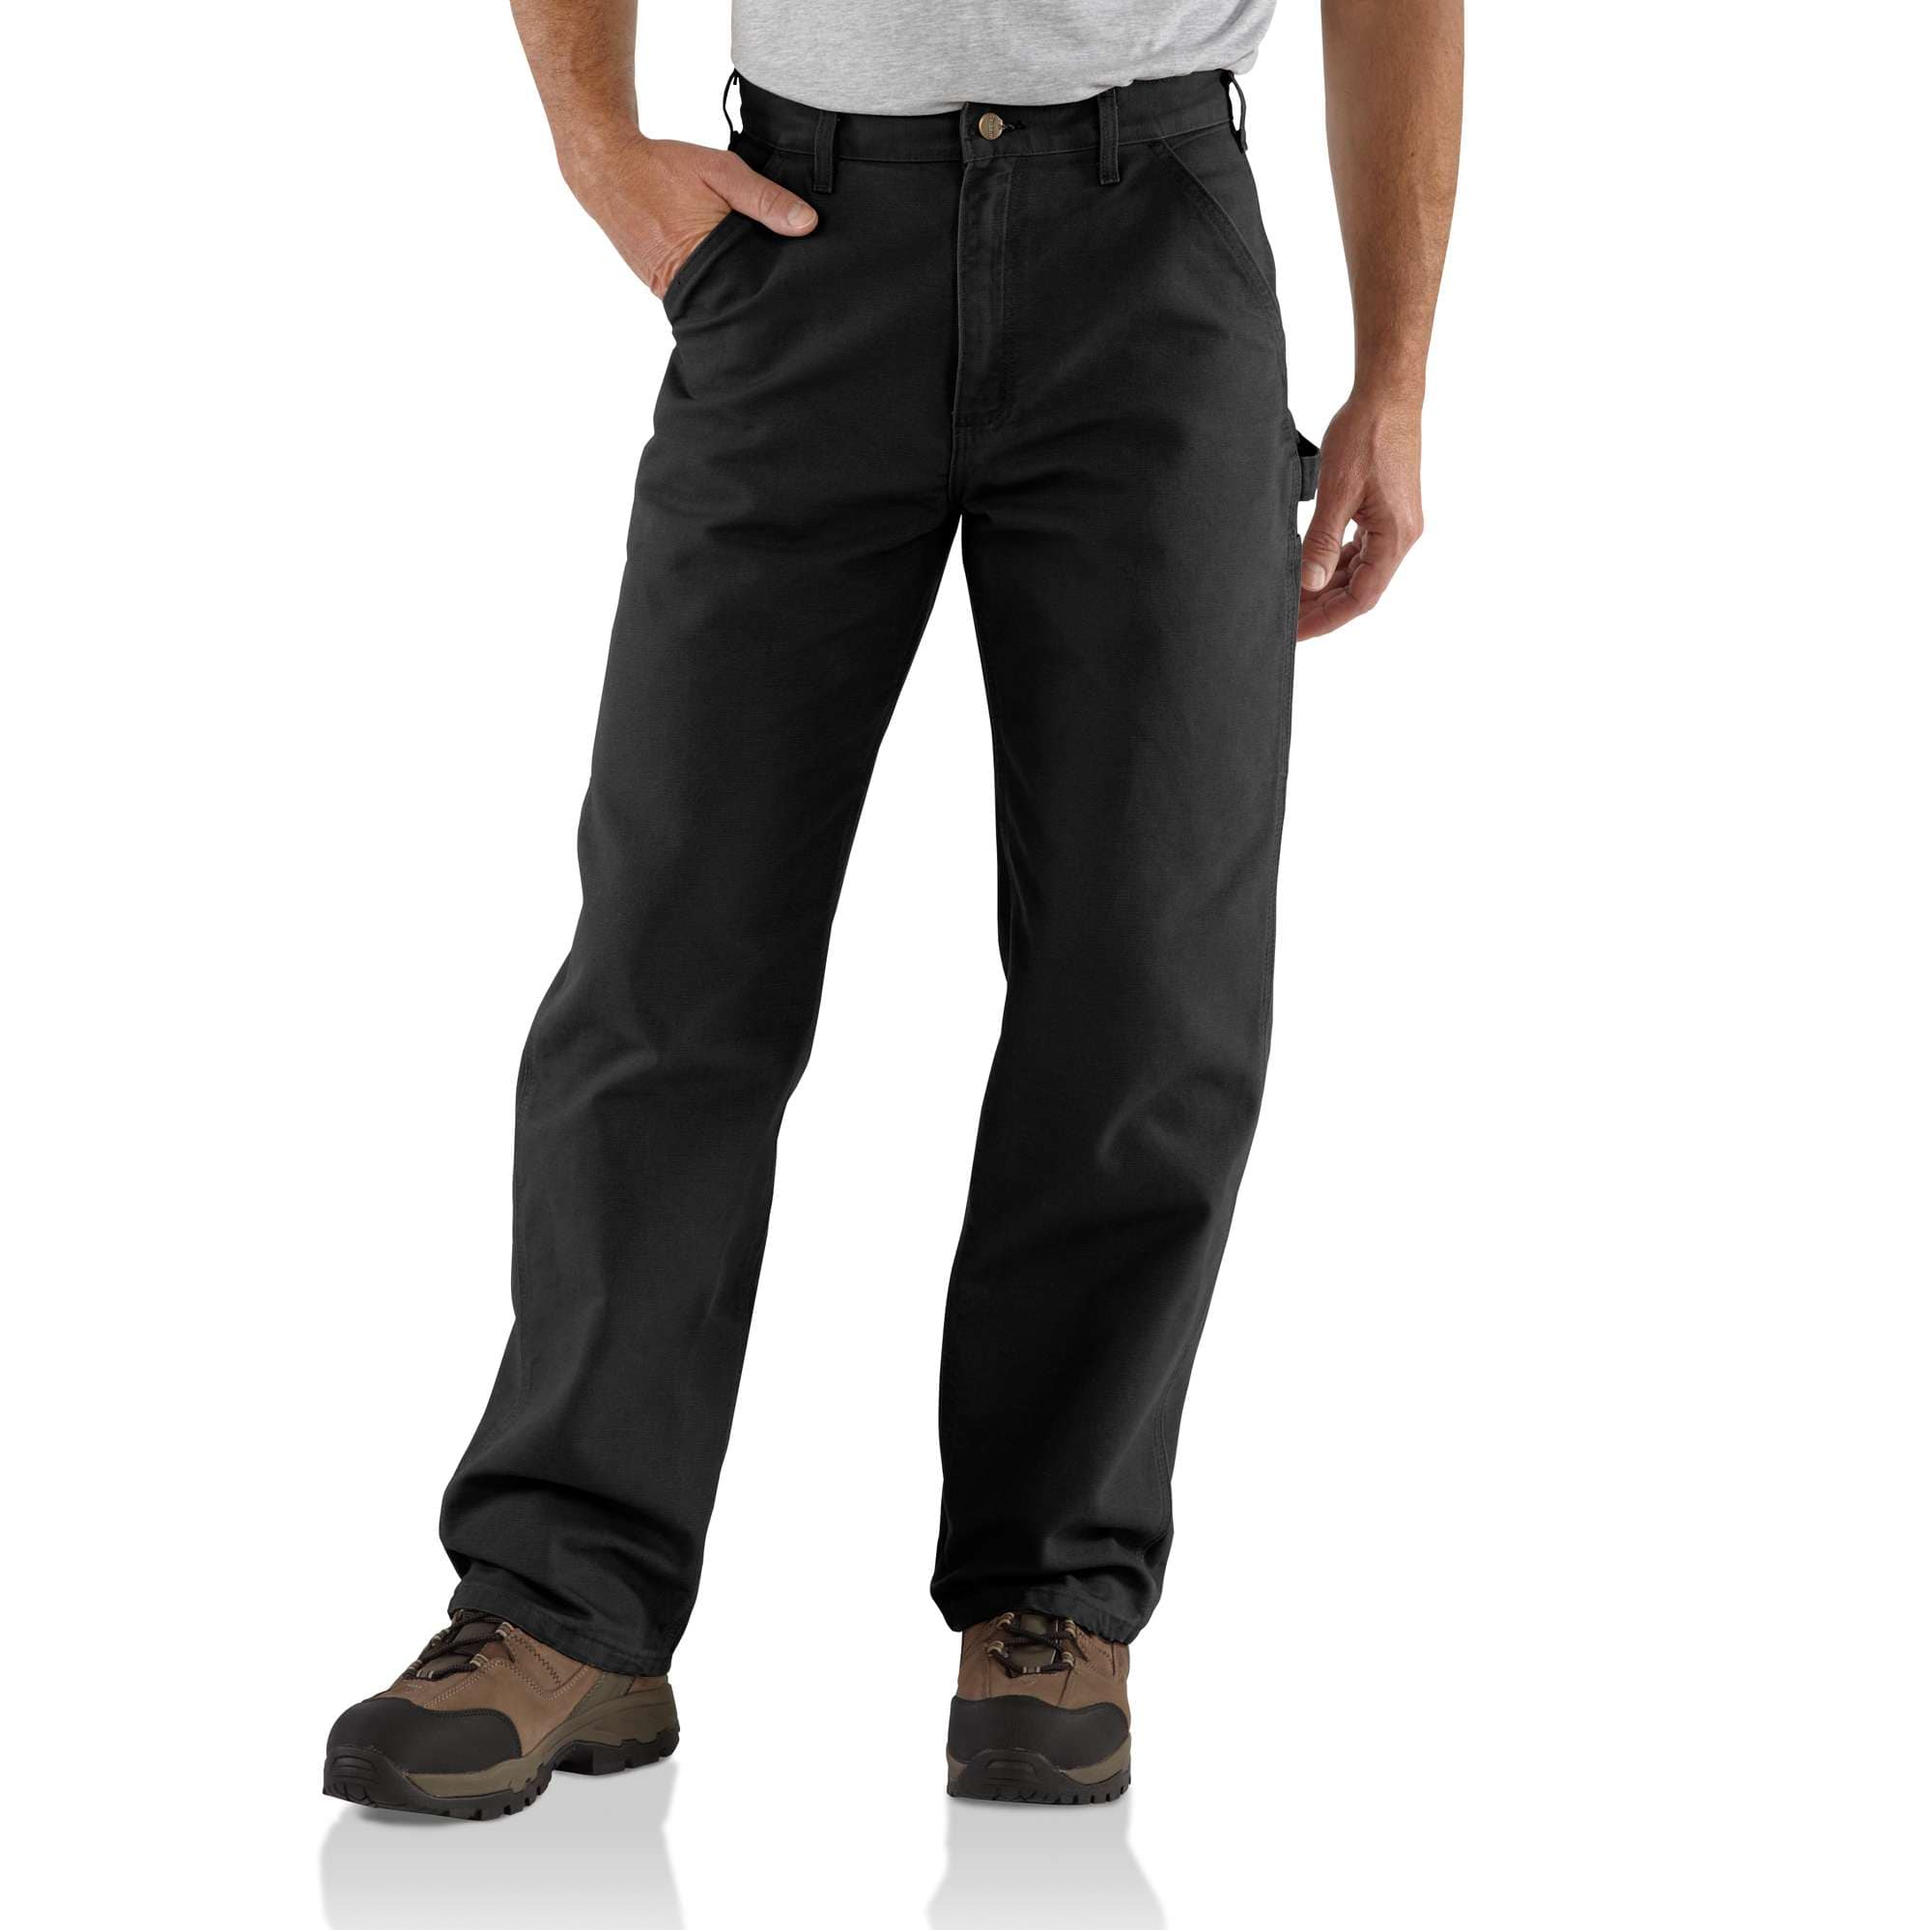 Uniforms Today, Pants, Nwot Professional Service Industry Uniform Pants